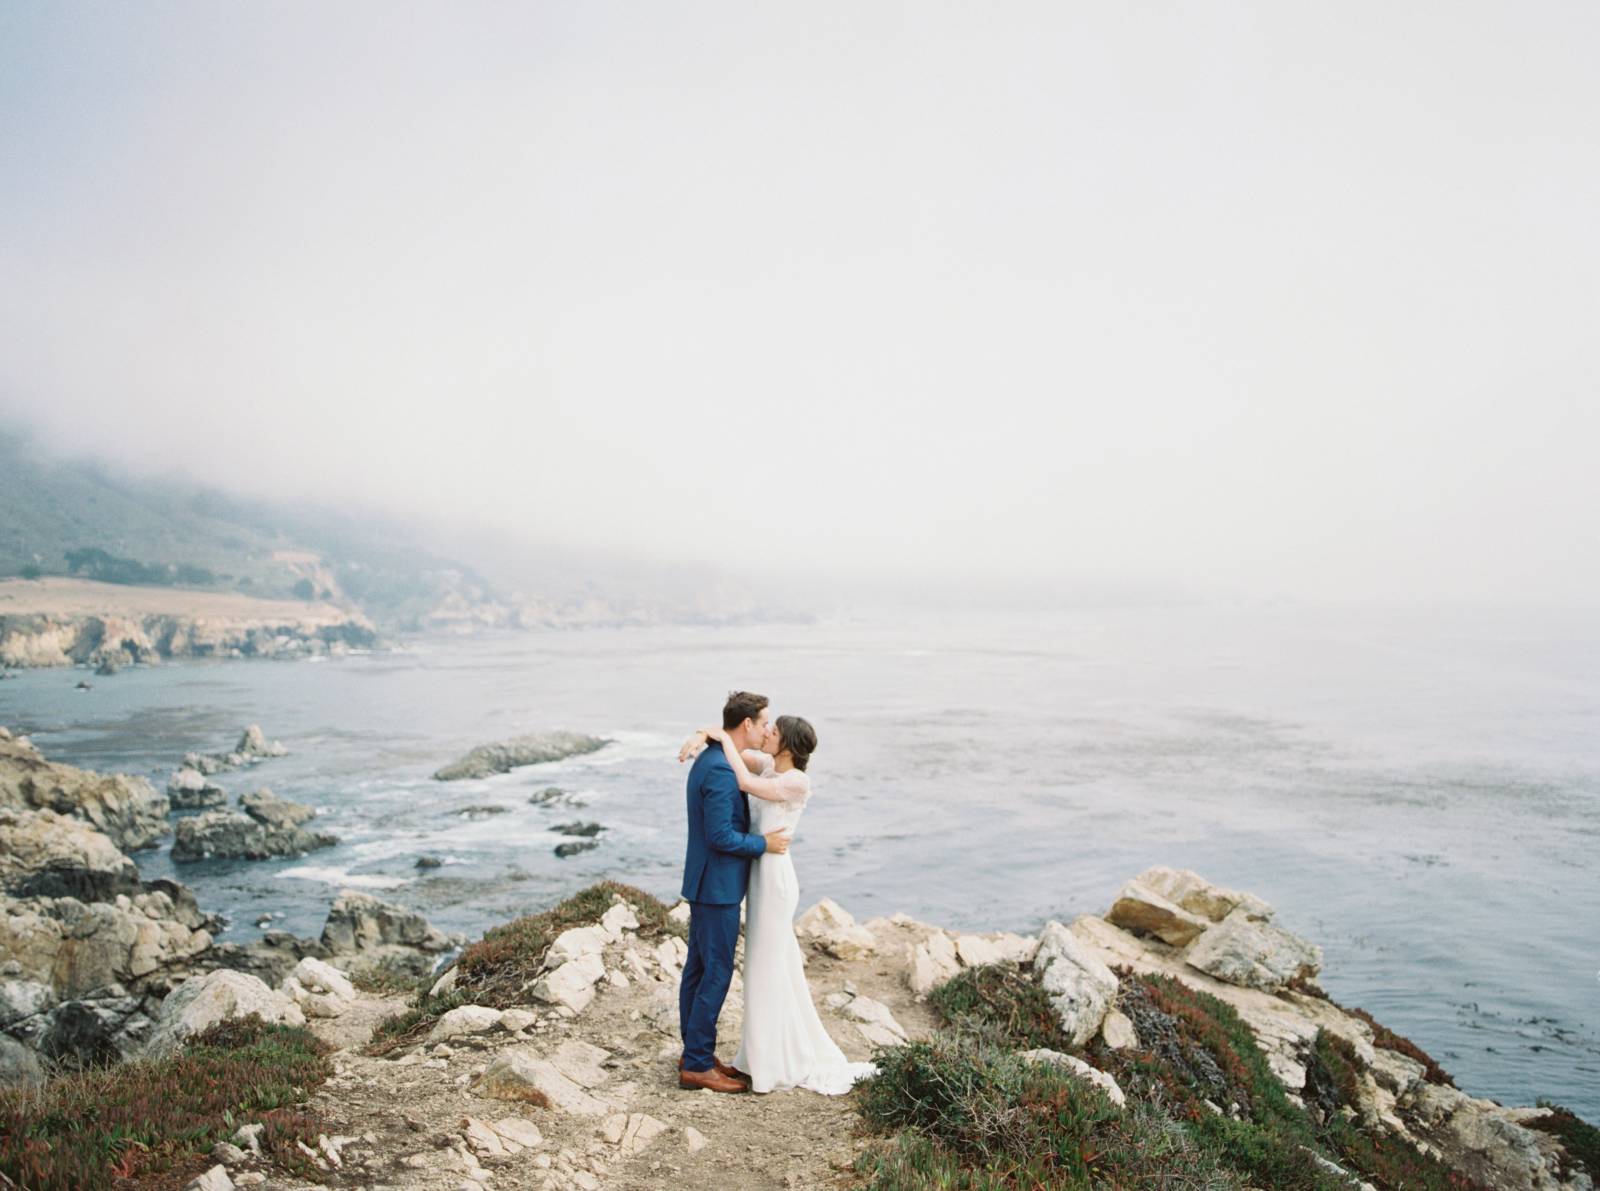 Romantic sea cliff wedding photos